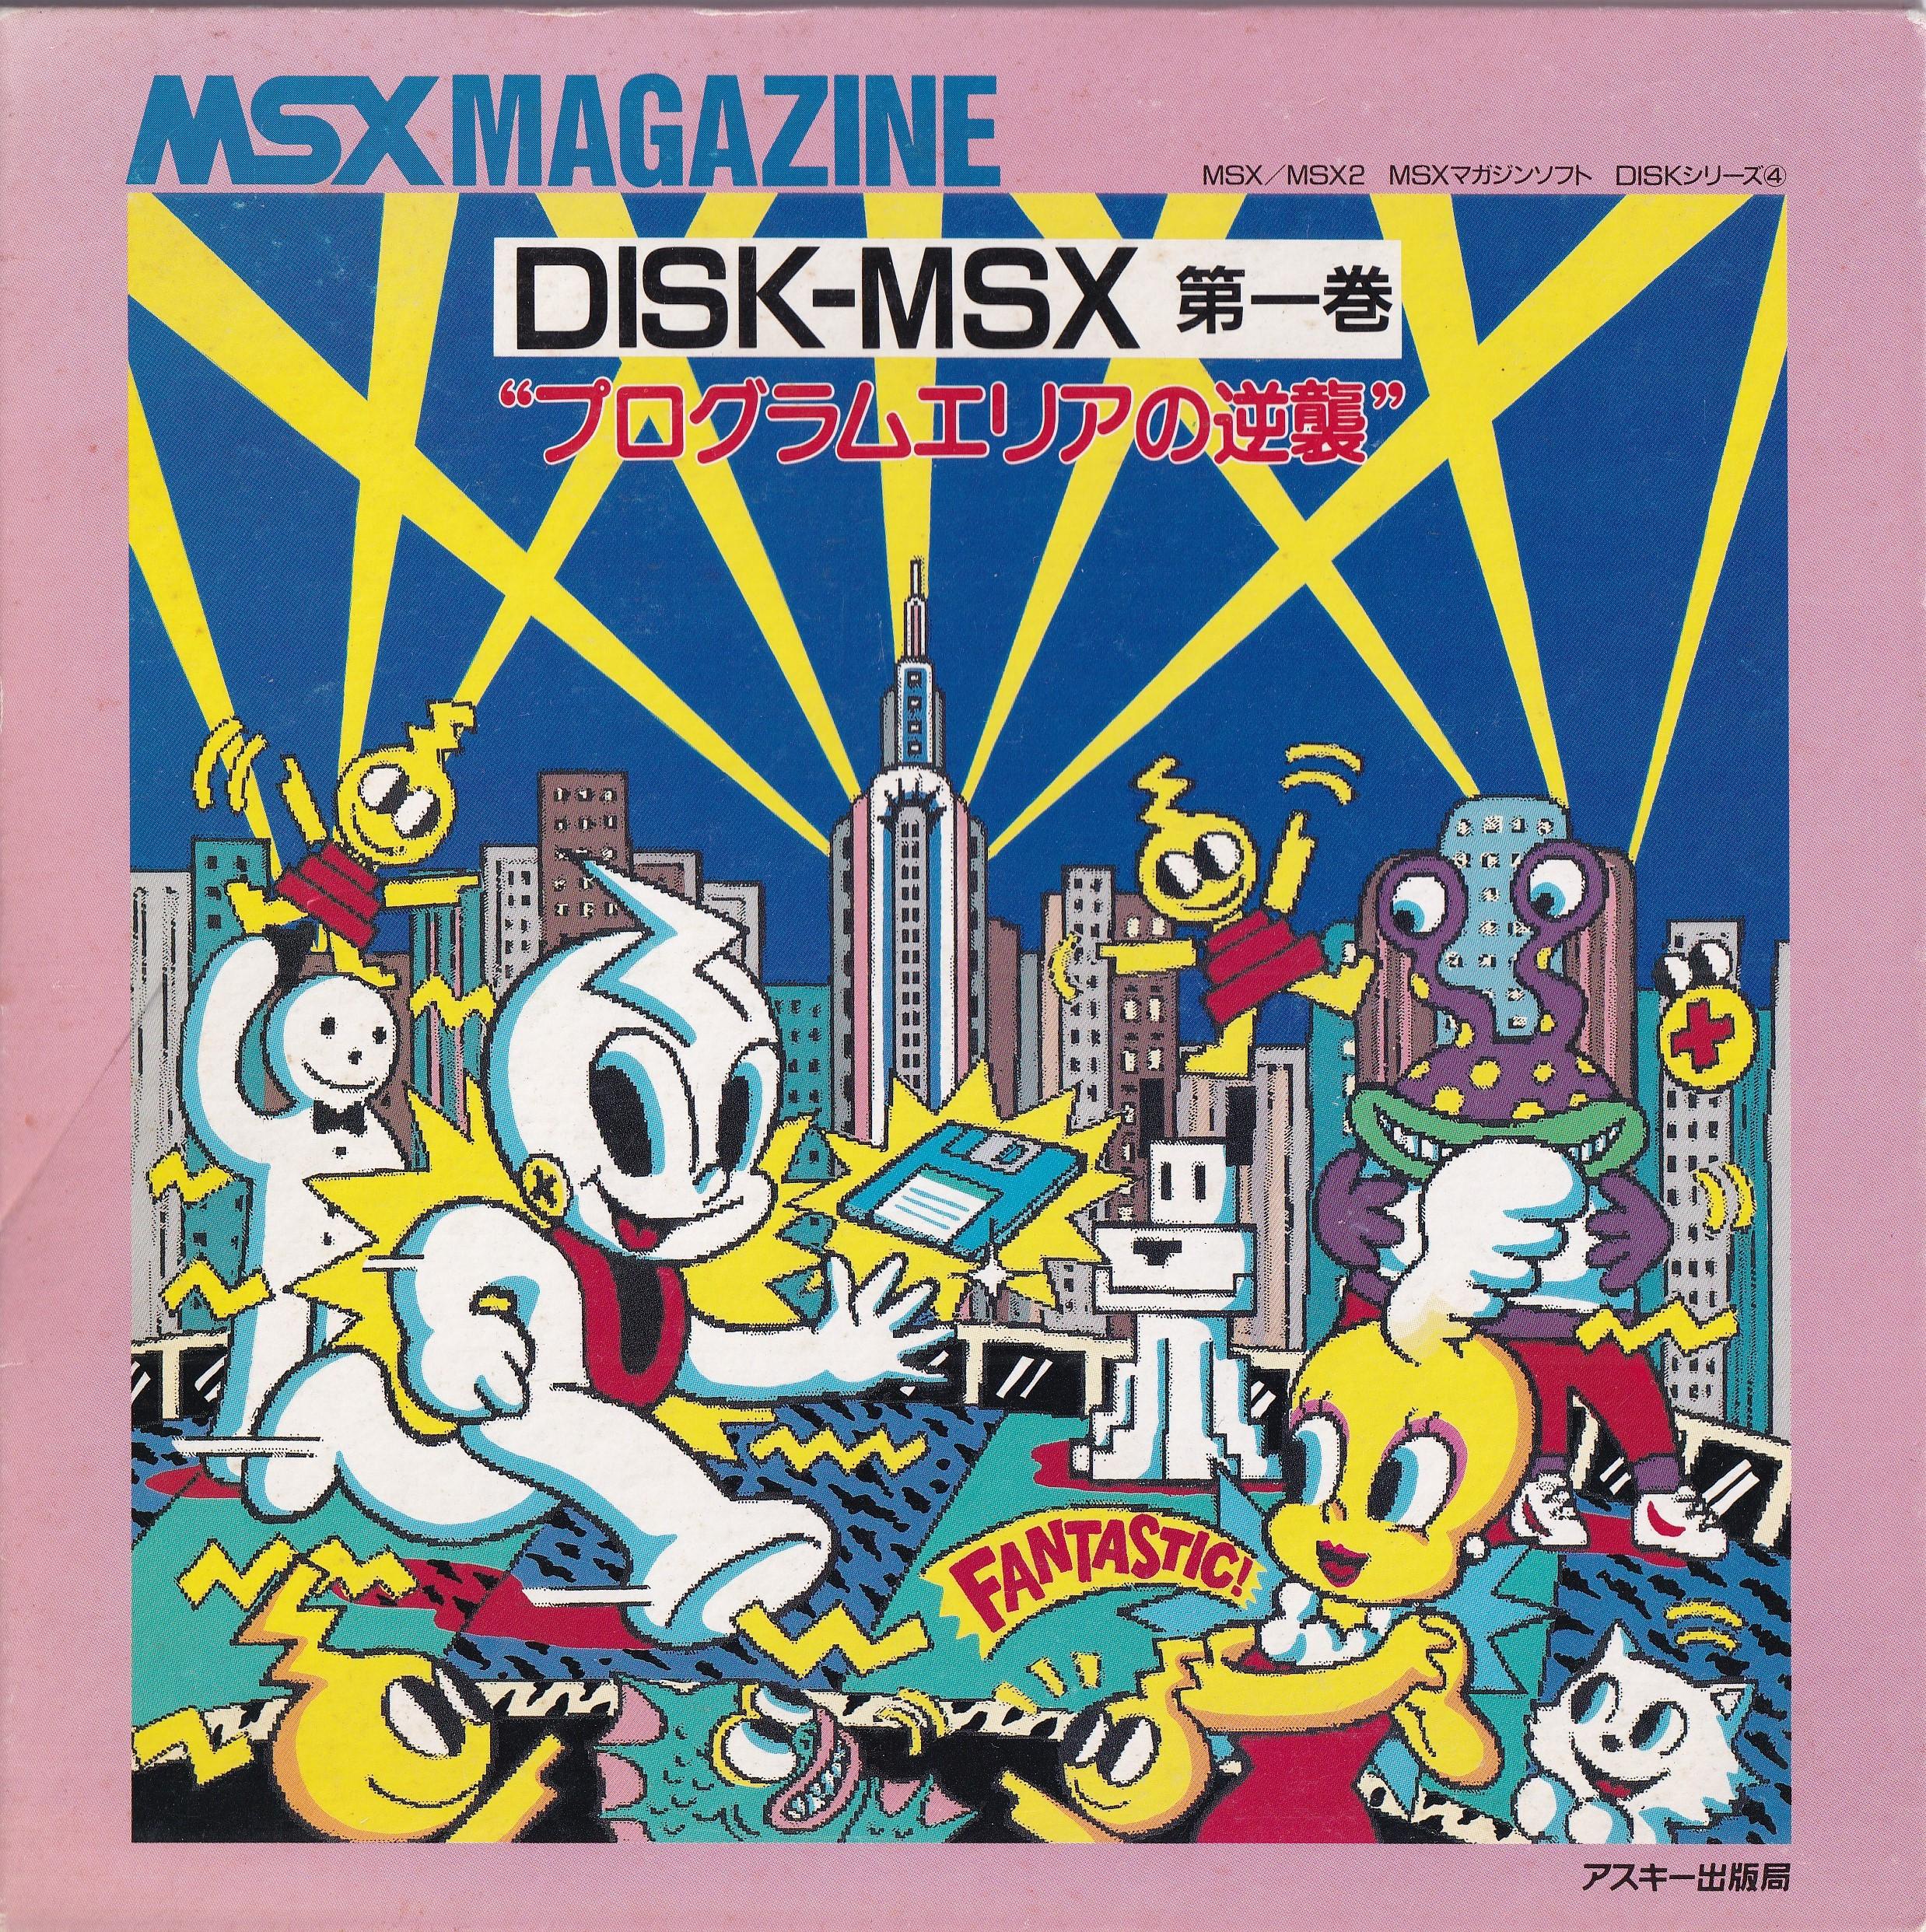 MSX Magazine Disk-MSX Volume 1 